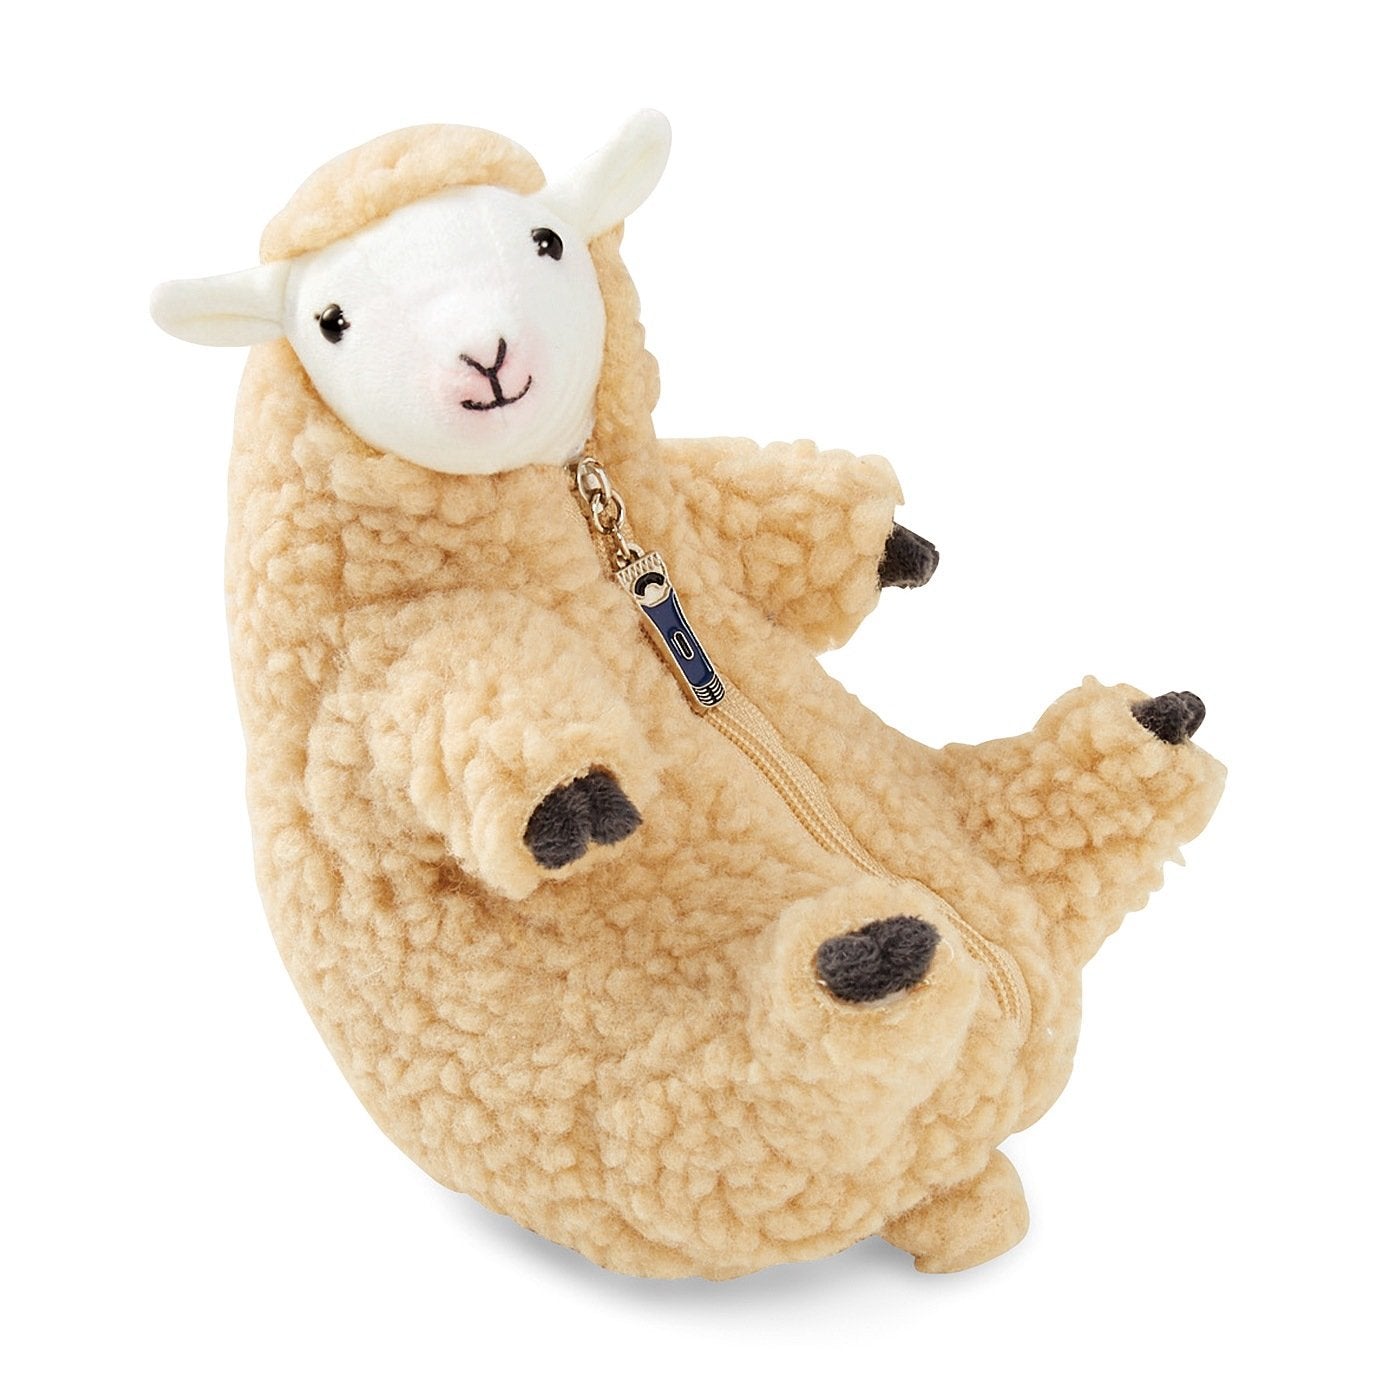 Wool Shearing Plush Toy